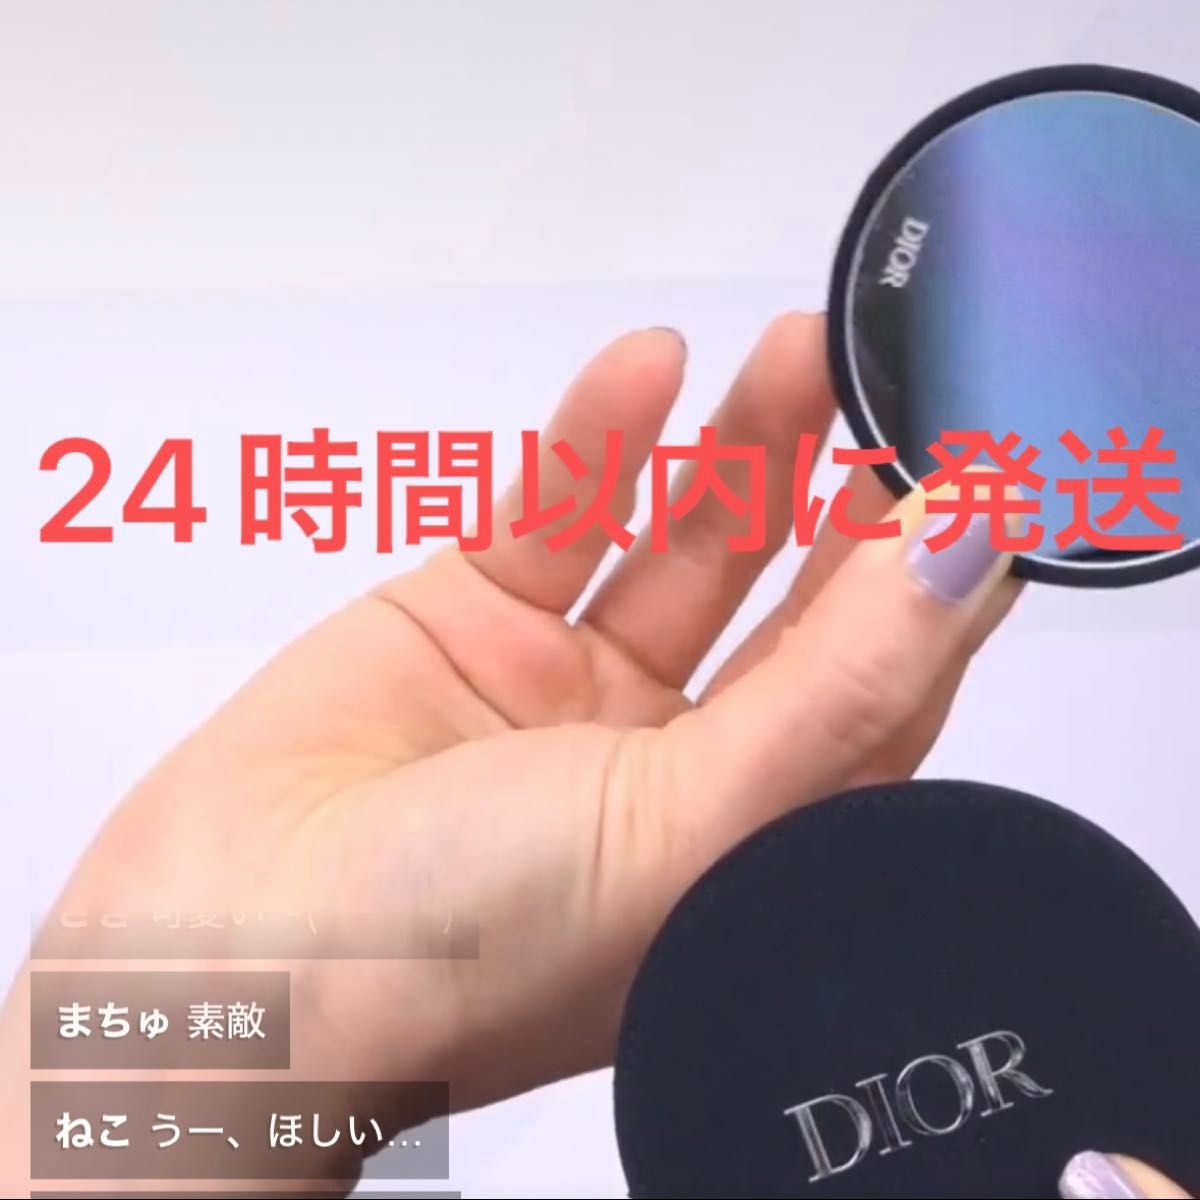 新品未使用☆Dior ディオール オリジナルミラー 非売品 ノベルティ ケース付き 鏡 黒 ブラック コンパクト